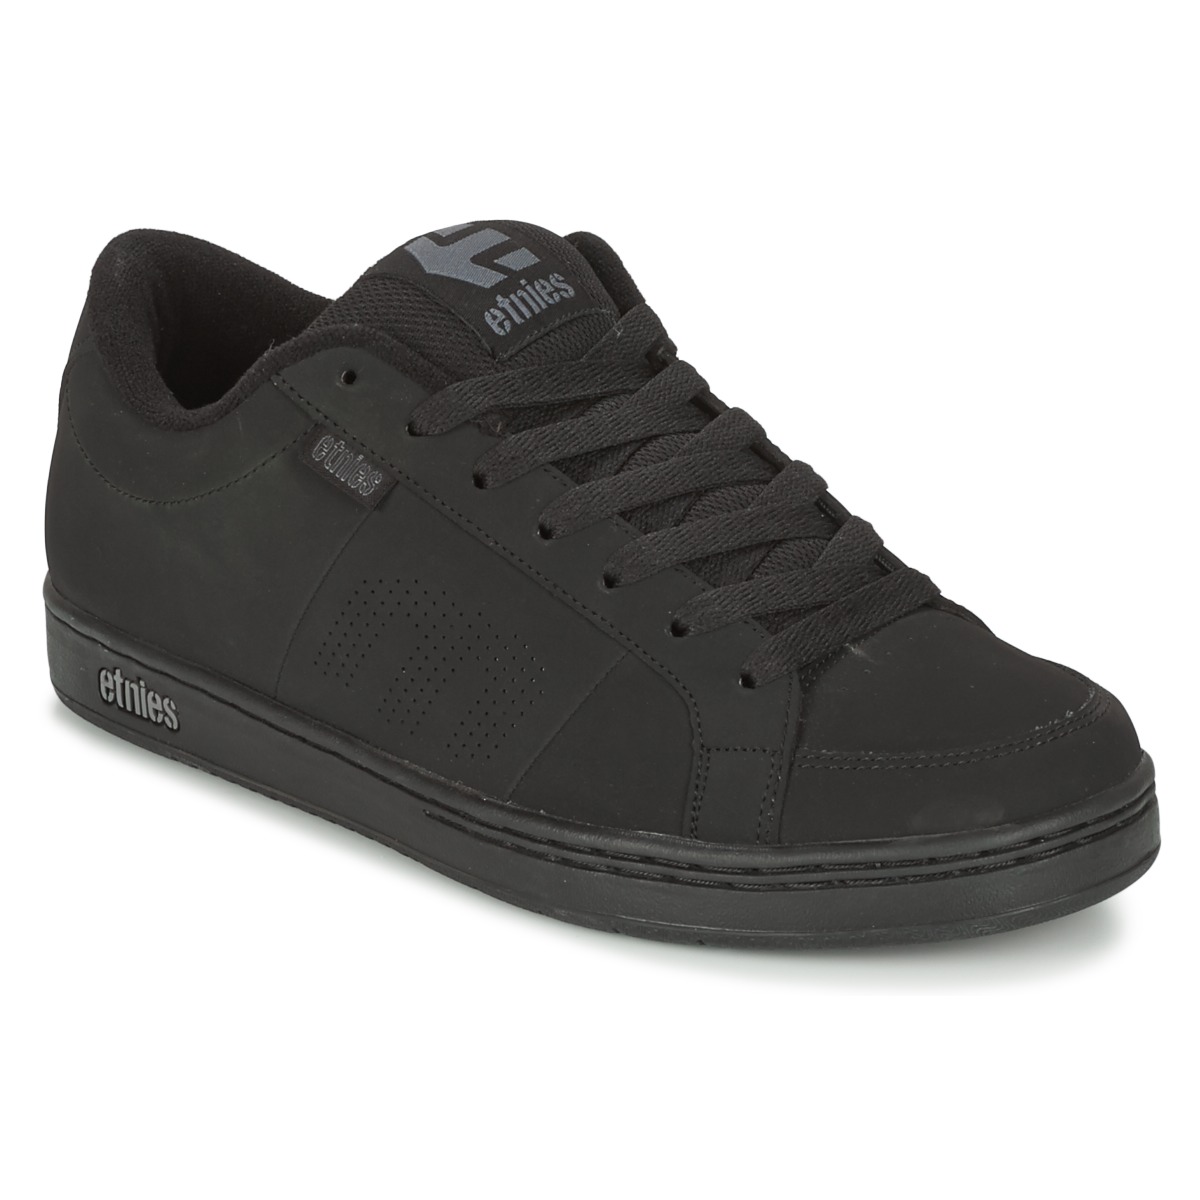 Etnies Kingpin Zapatos De Skate Para Hombres Negro Nubuck Zapatillas Size UK 6-14 